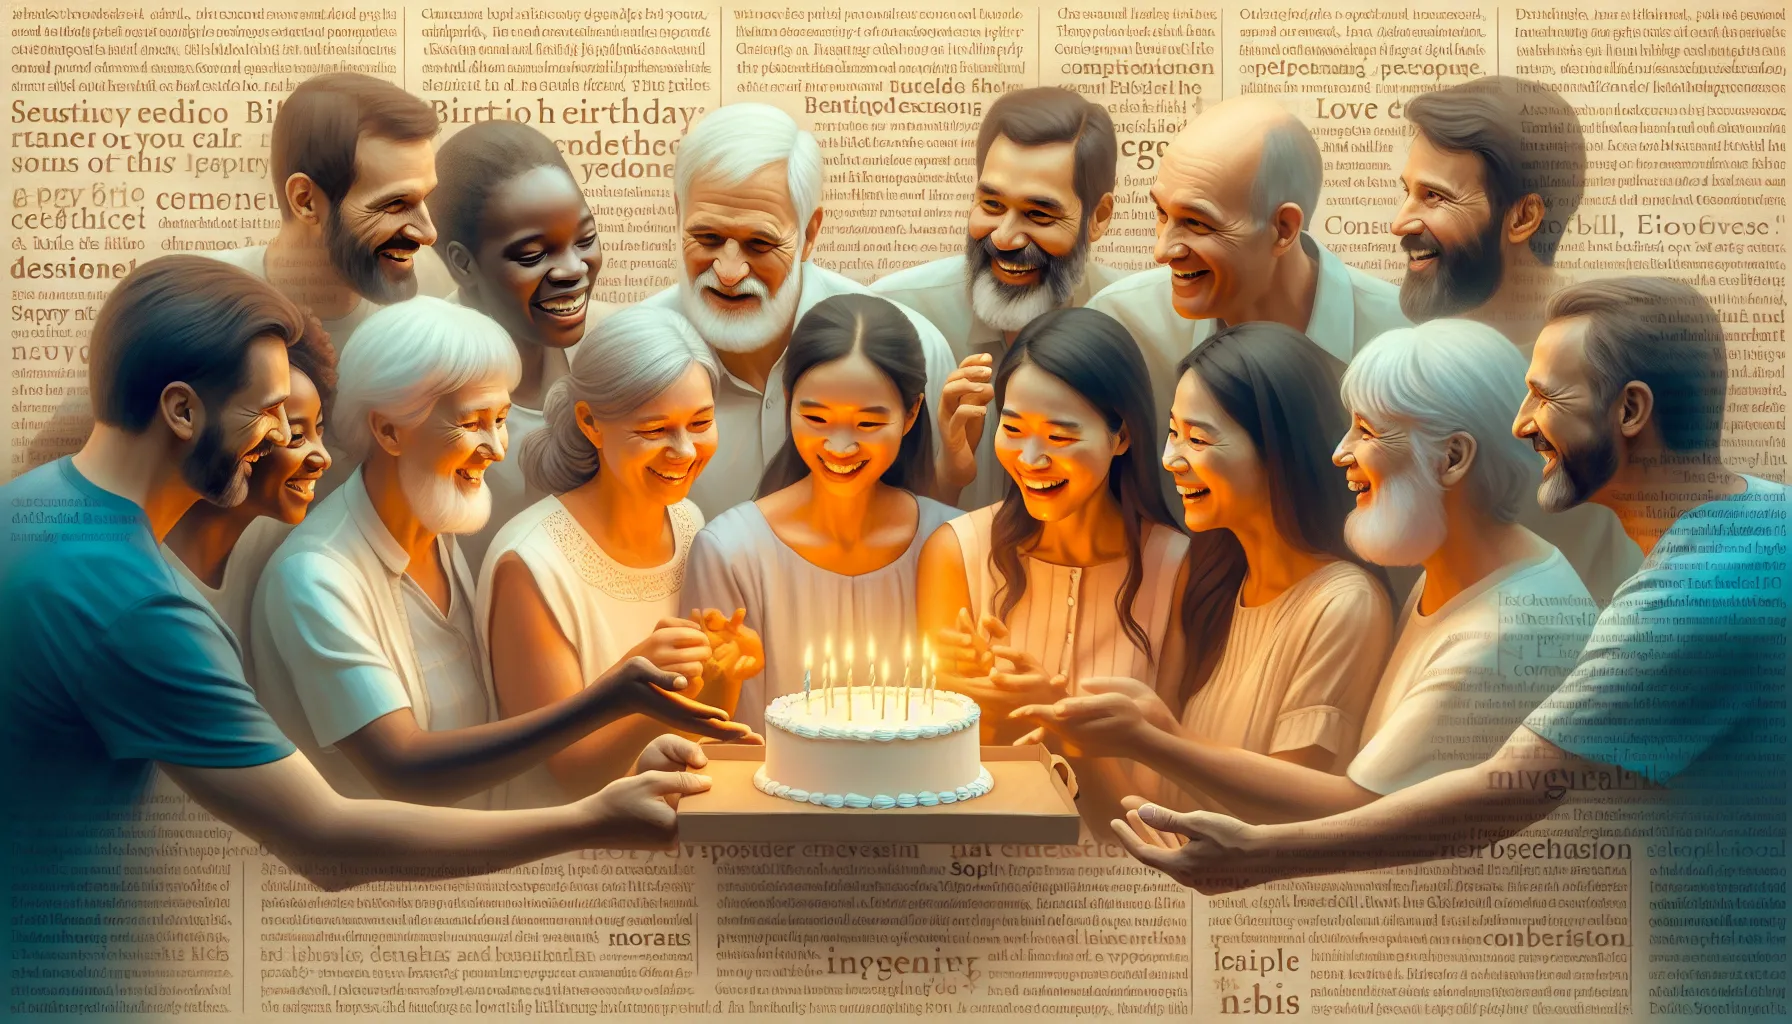 Imagen de un grupo de personas evangélicas celebrando un cumpleaños